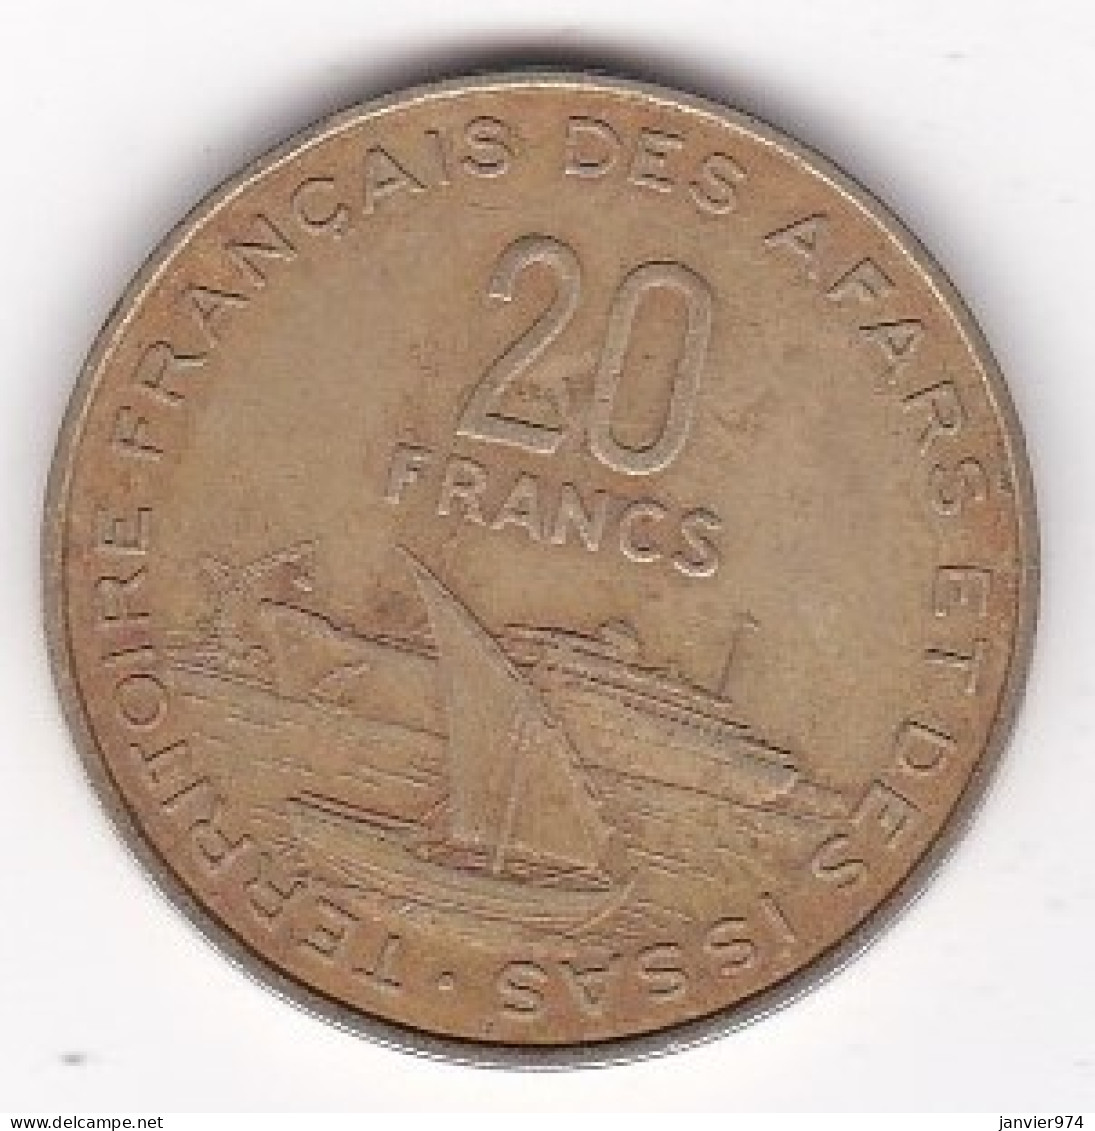 Territoire Français Des Afars Et Des Issas Djibouti 10 Francs 1975 , En Cupro Alu Nickel , Lec# 63 - Gibuti